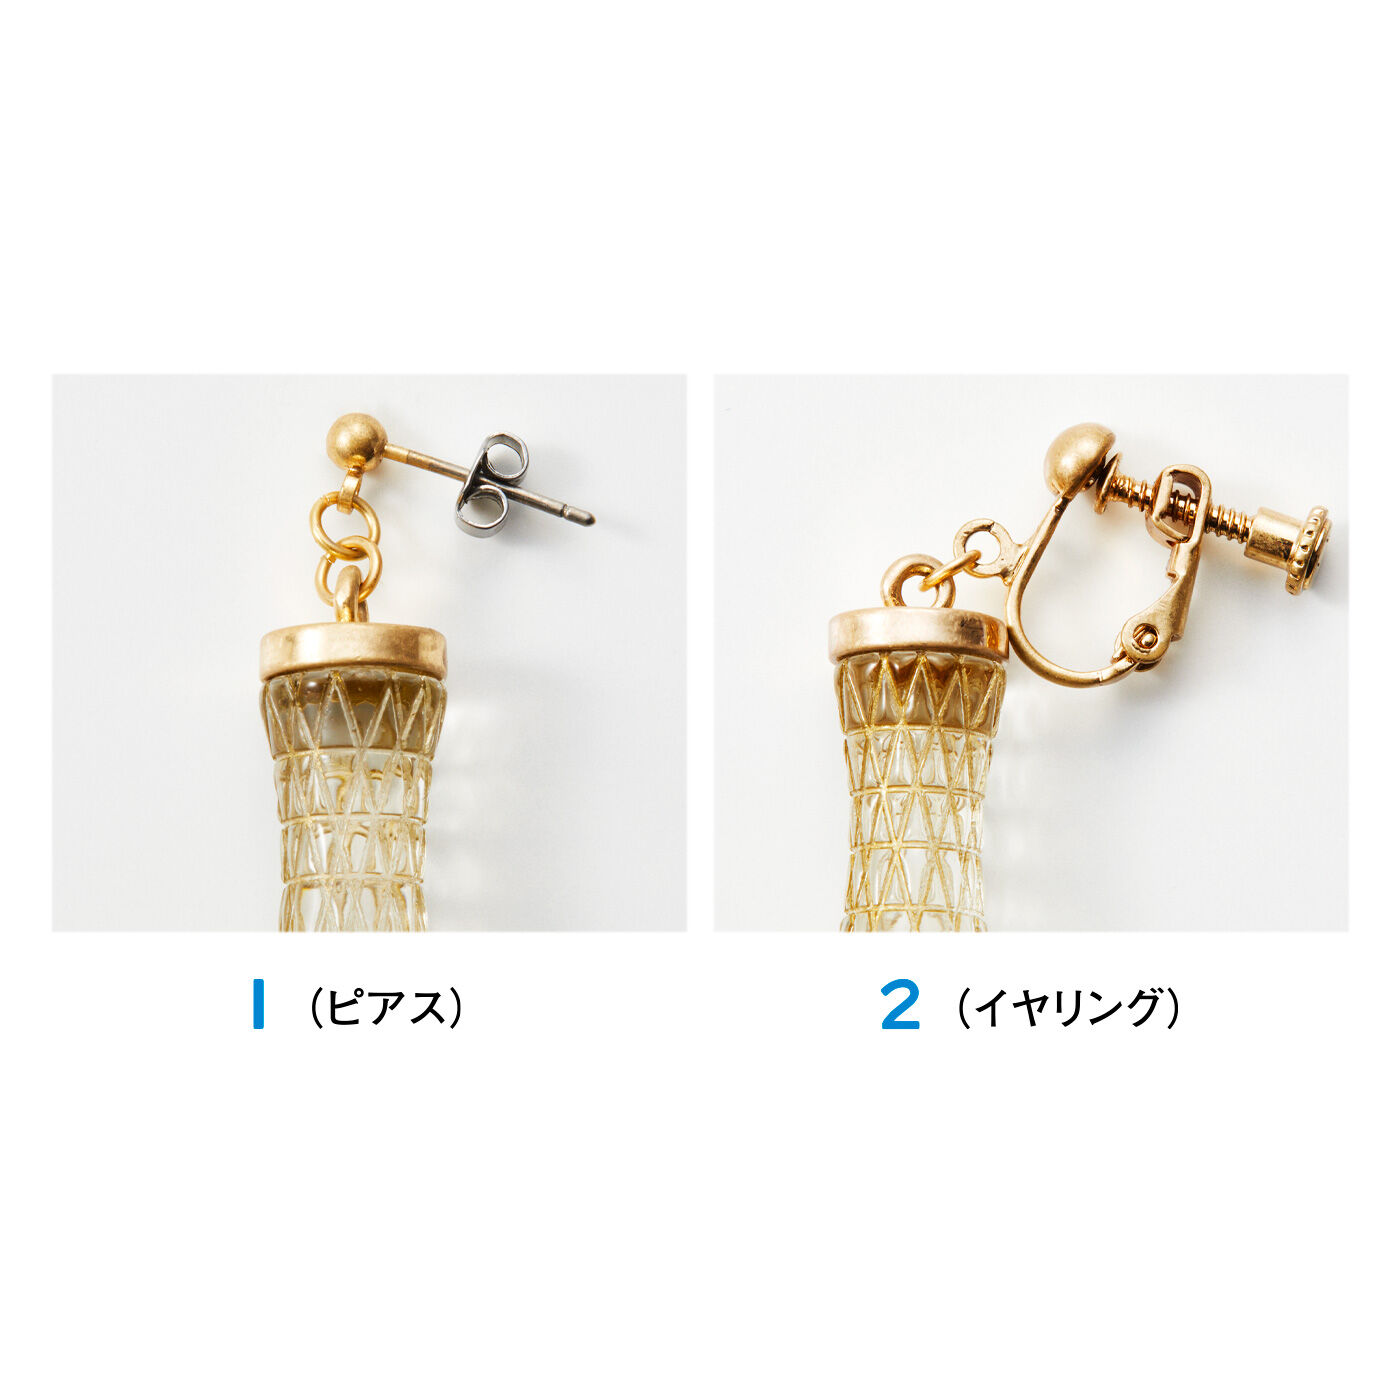 フェリシモコレクション|ブリリアンス神戸基金 KOBE PORT TOWER 耳にタワーな耳飾り